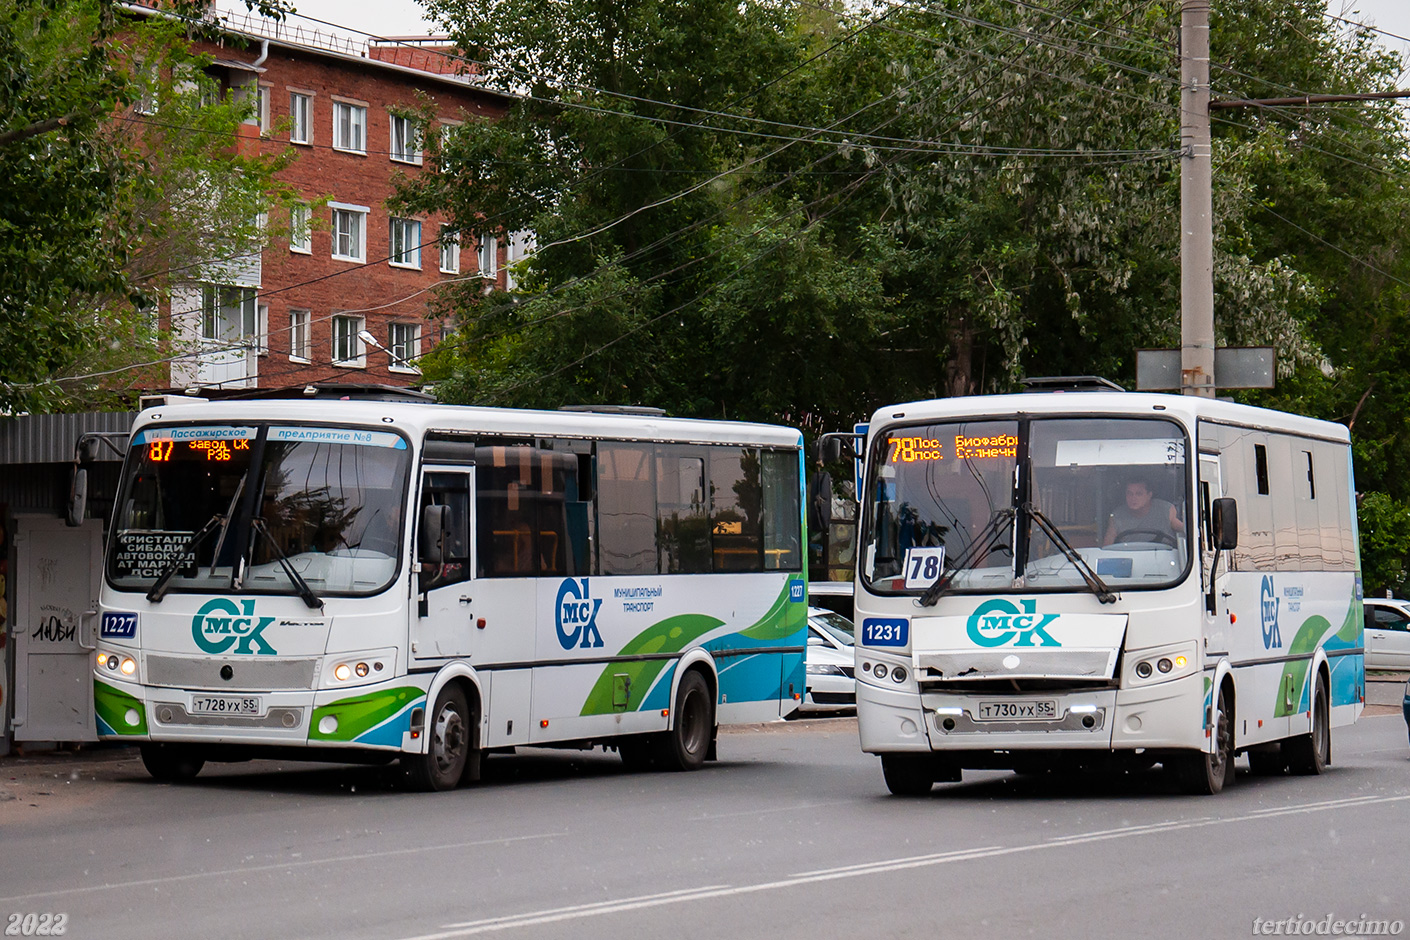 Omsk region, PAZ-320414-04 "Vektor" (1-2) # 1227; Omsk region, PAZ-320414-04 "Vektor" (1-2) # 1231